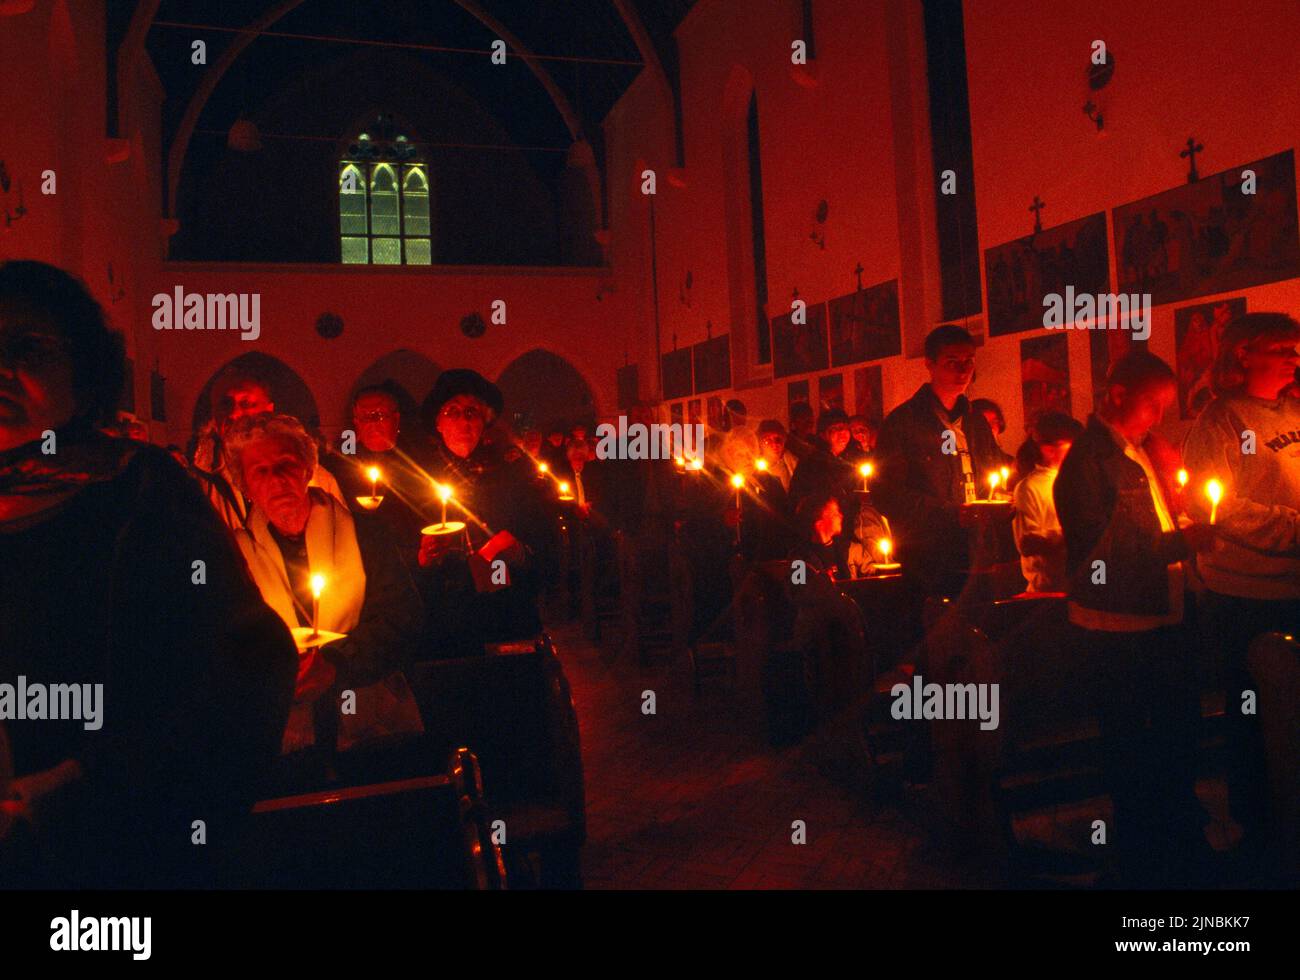 Congrégation tenant une bougie et chantant des hymnes au service de la lumière le samedi Saint Église catholique St Joseph Roehampton Londres Angleterre Banque D'Images